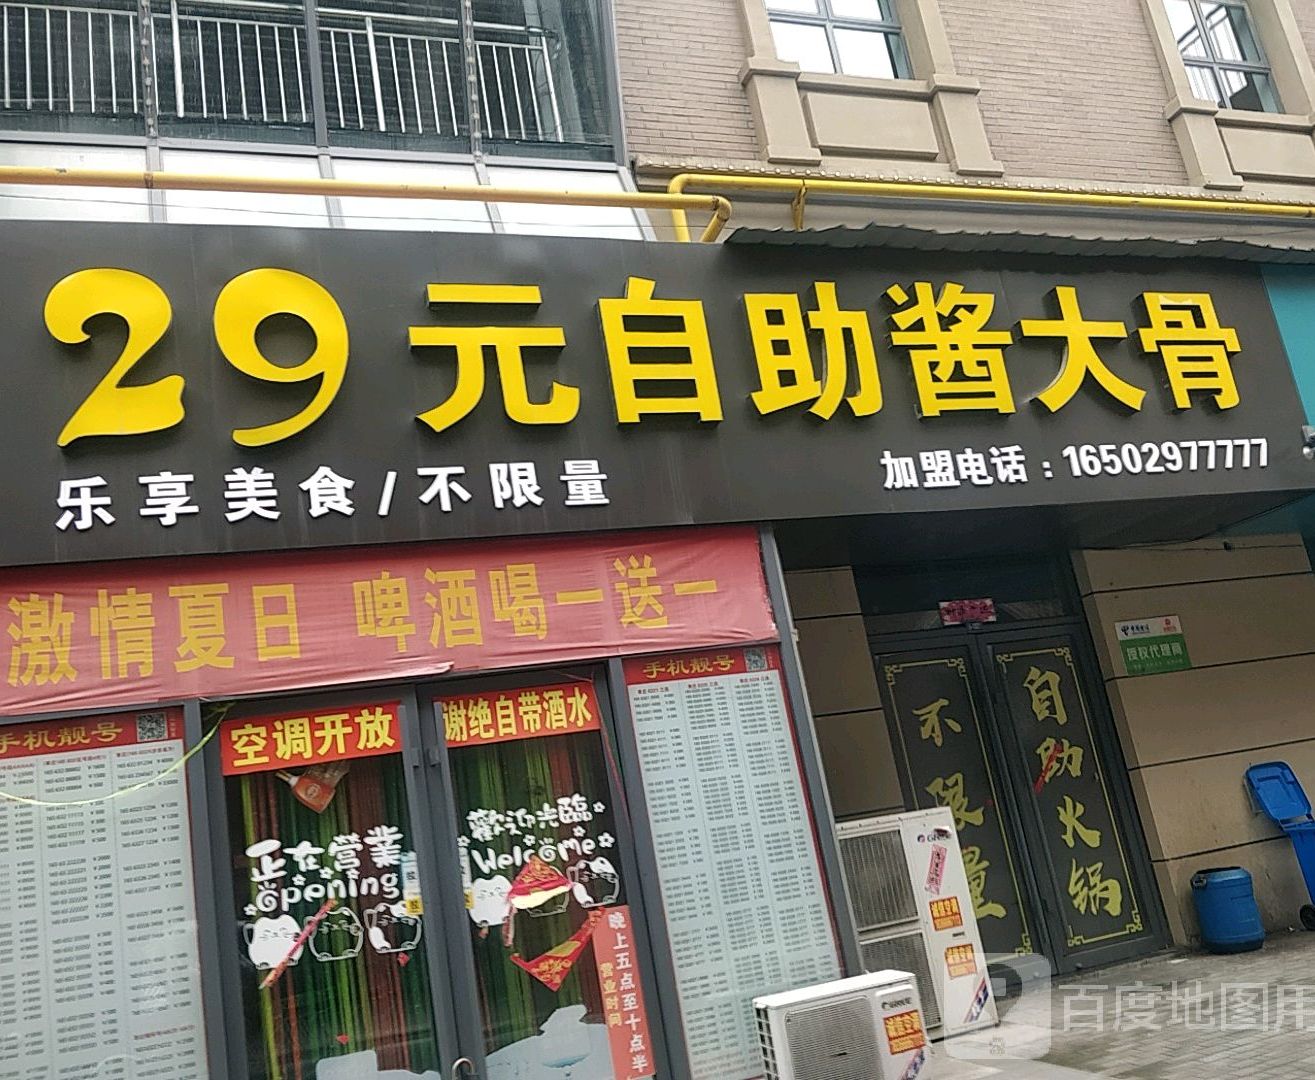 29元自助大大骨·火锅(1878美食城店)